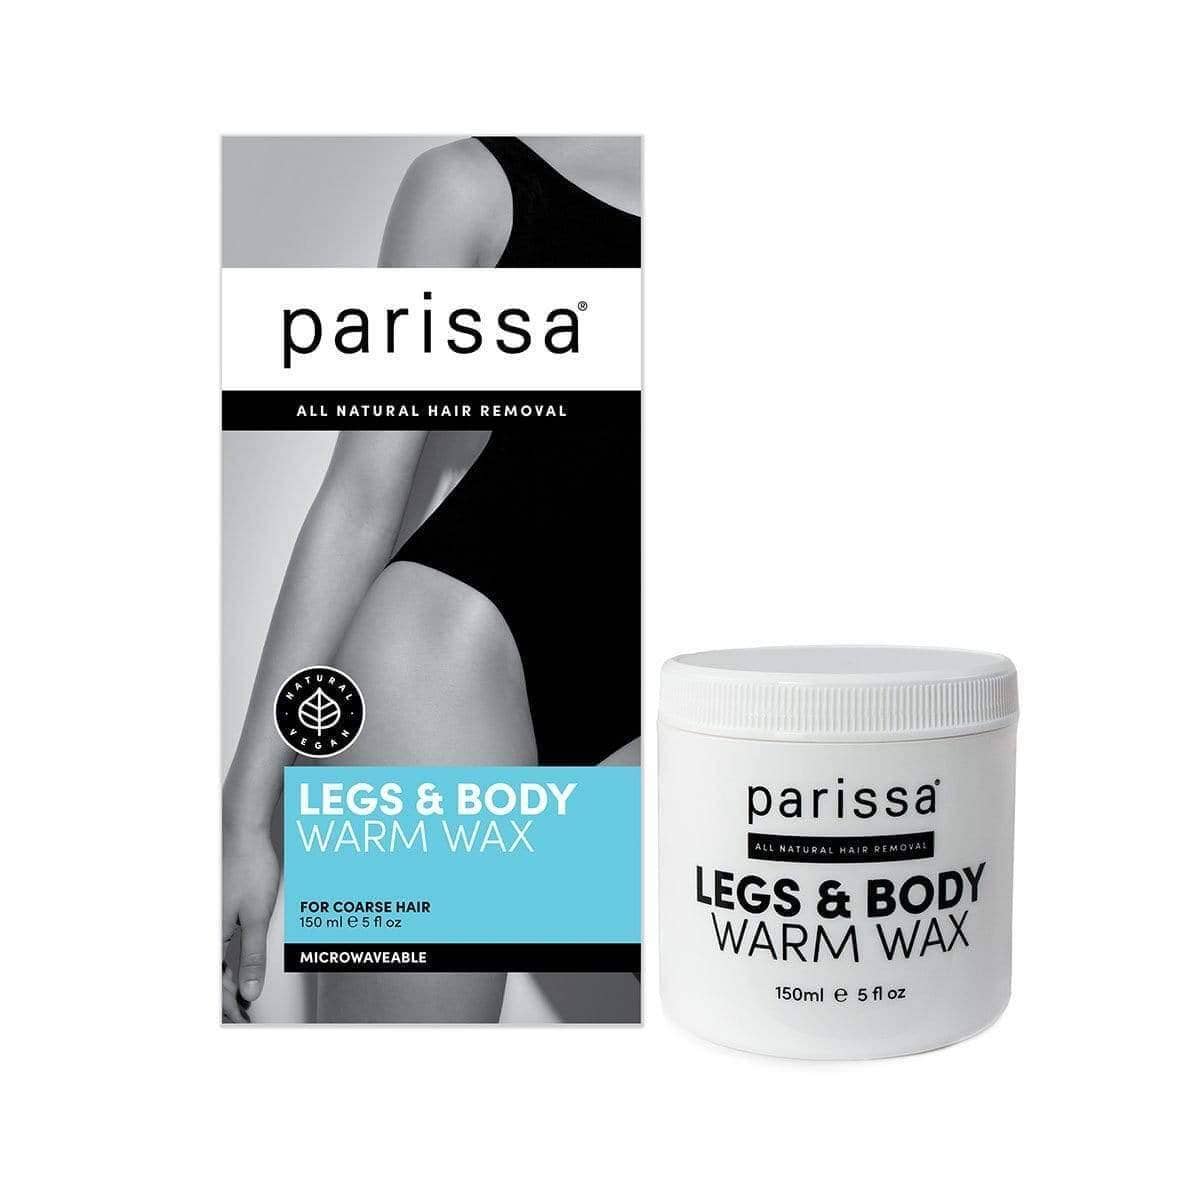 Legs & Body Warm Wax Kits Parissa 